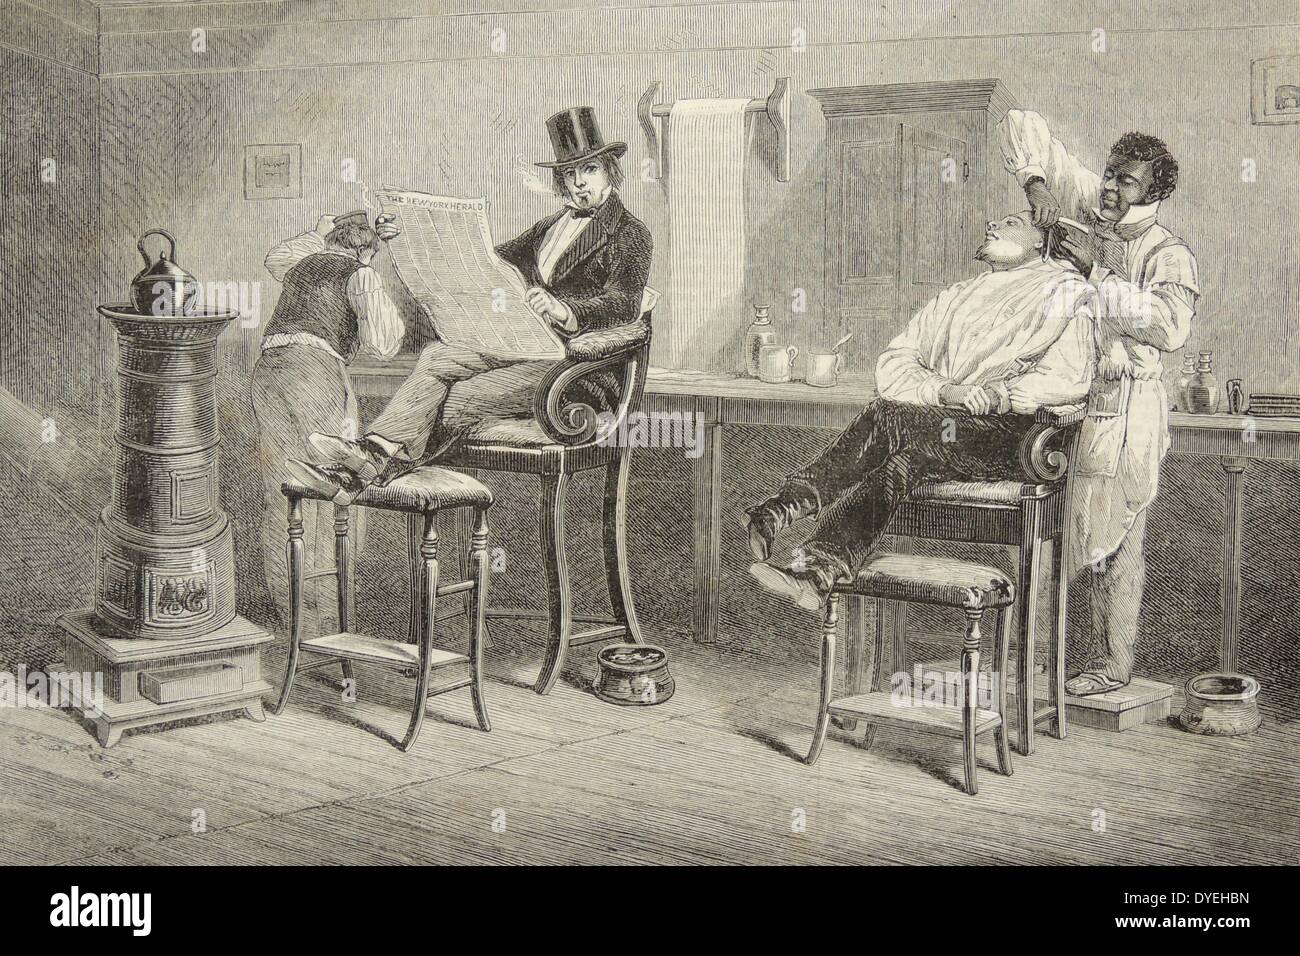 Barber's Shop, Richmond, Virginia, USA, mit typisch hohe Stühle mit einem spucknapf neben jeder, und ein Bügeleisen, Herd Heizung Wasser. Warten Client liest eine Zeitung. Holzschnitt, London, 1861. Stockfoto